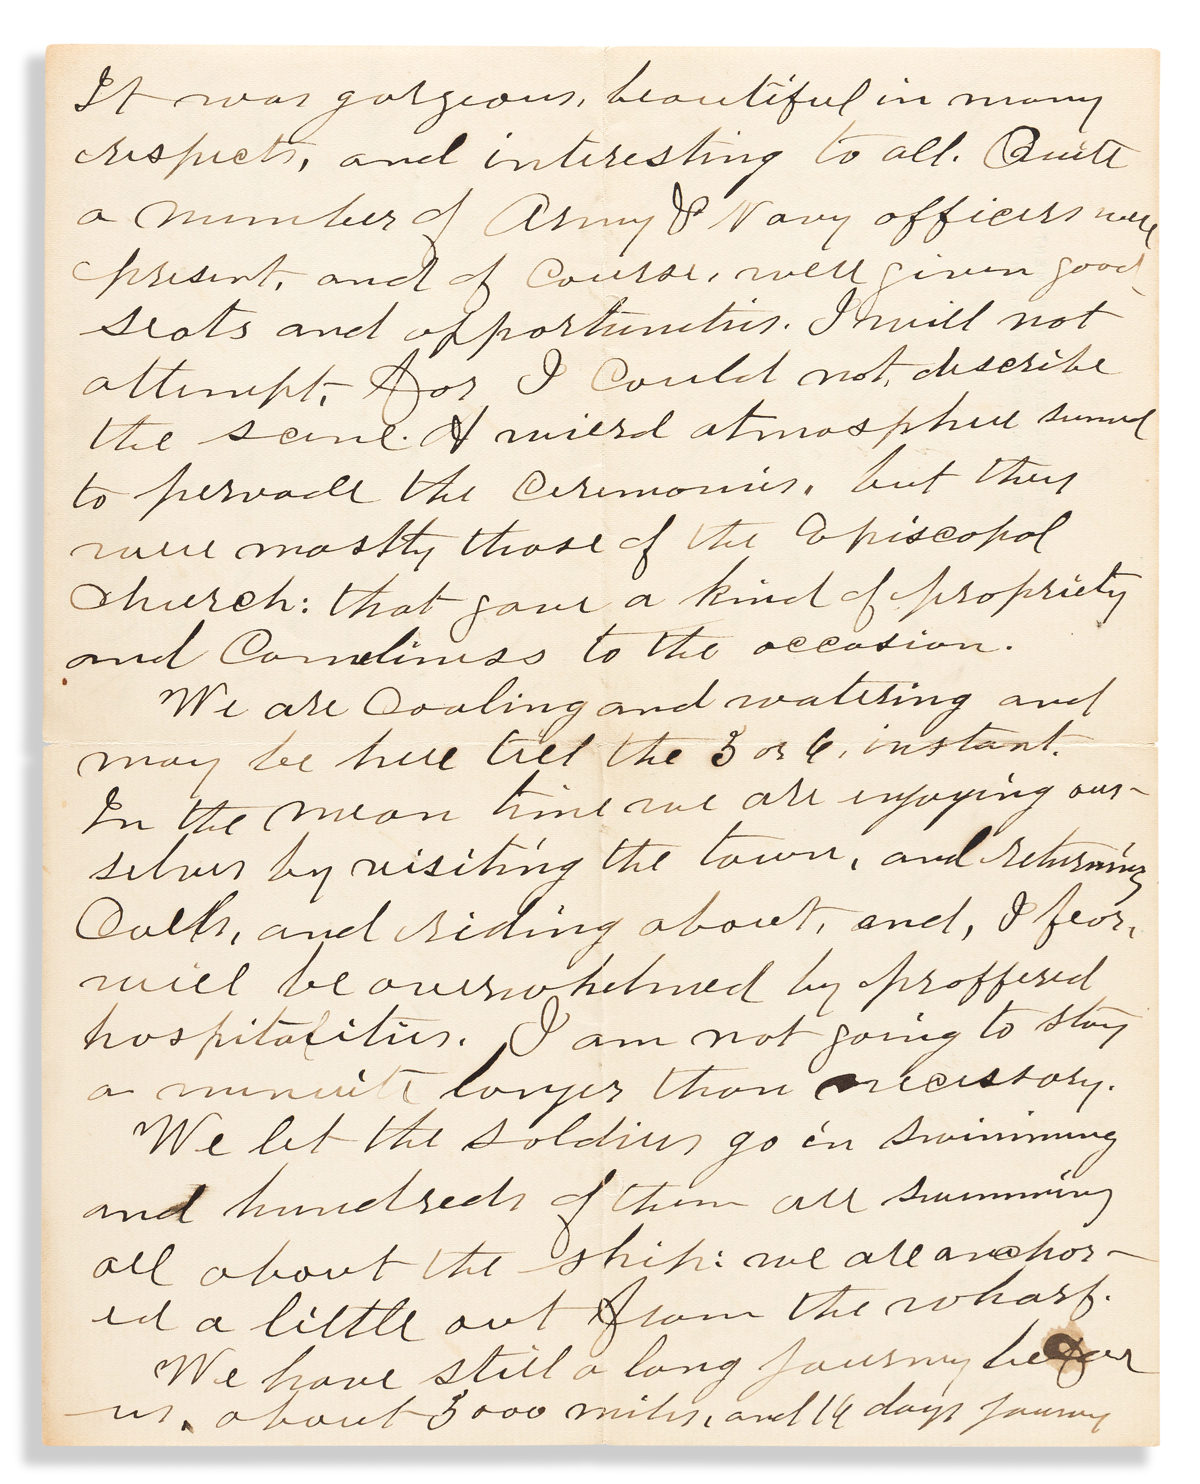 (HAWAII.) Aaron S. Daggett. Letter describing a royal Hawaiian funeral.